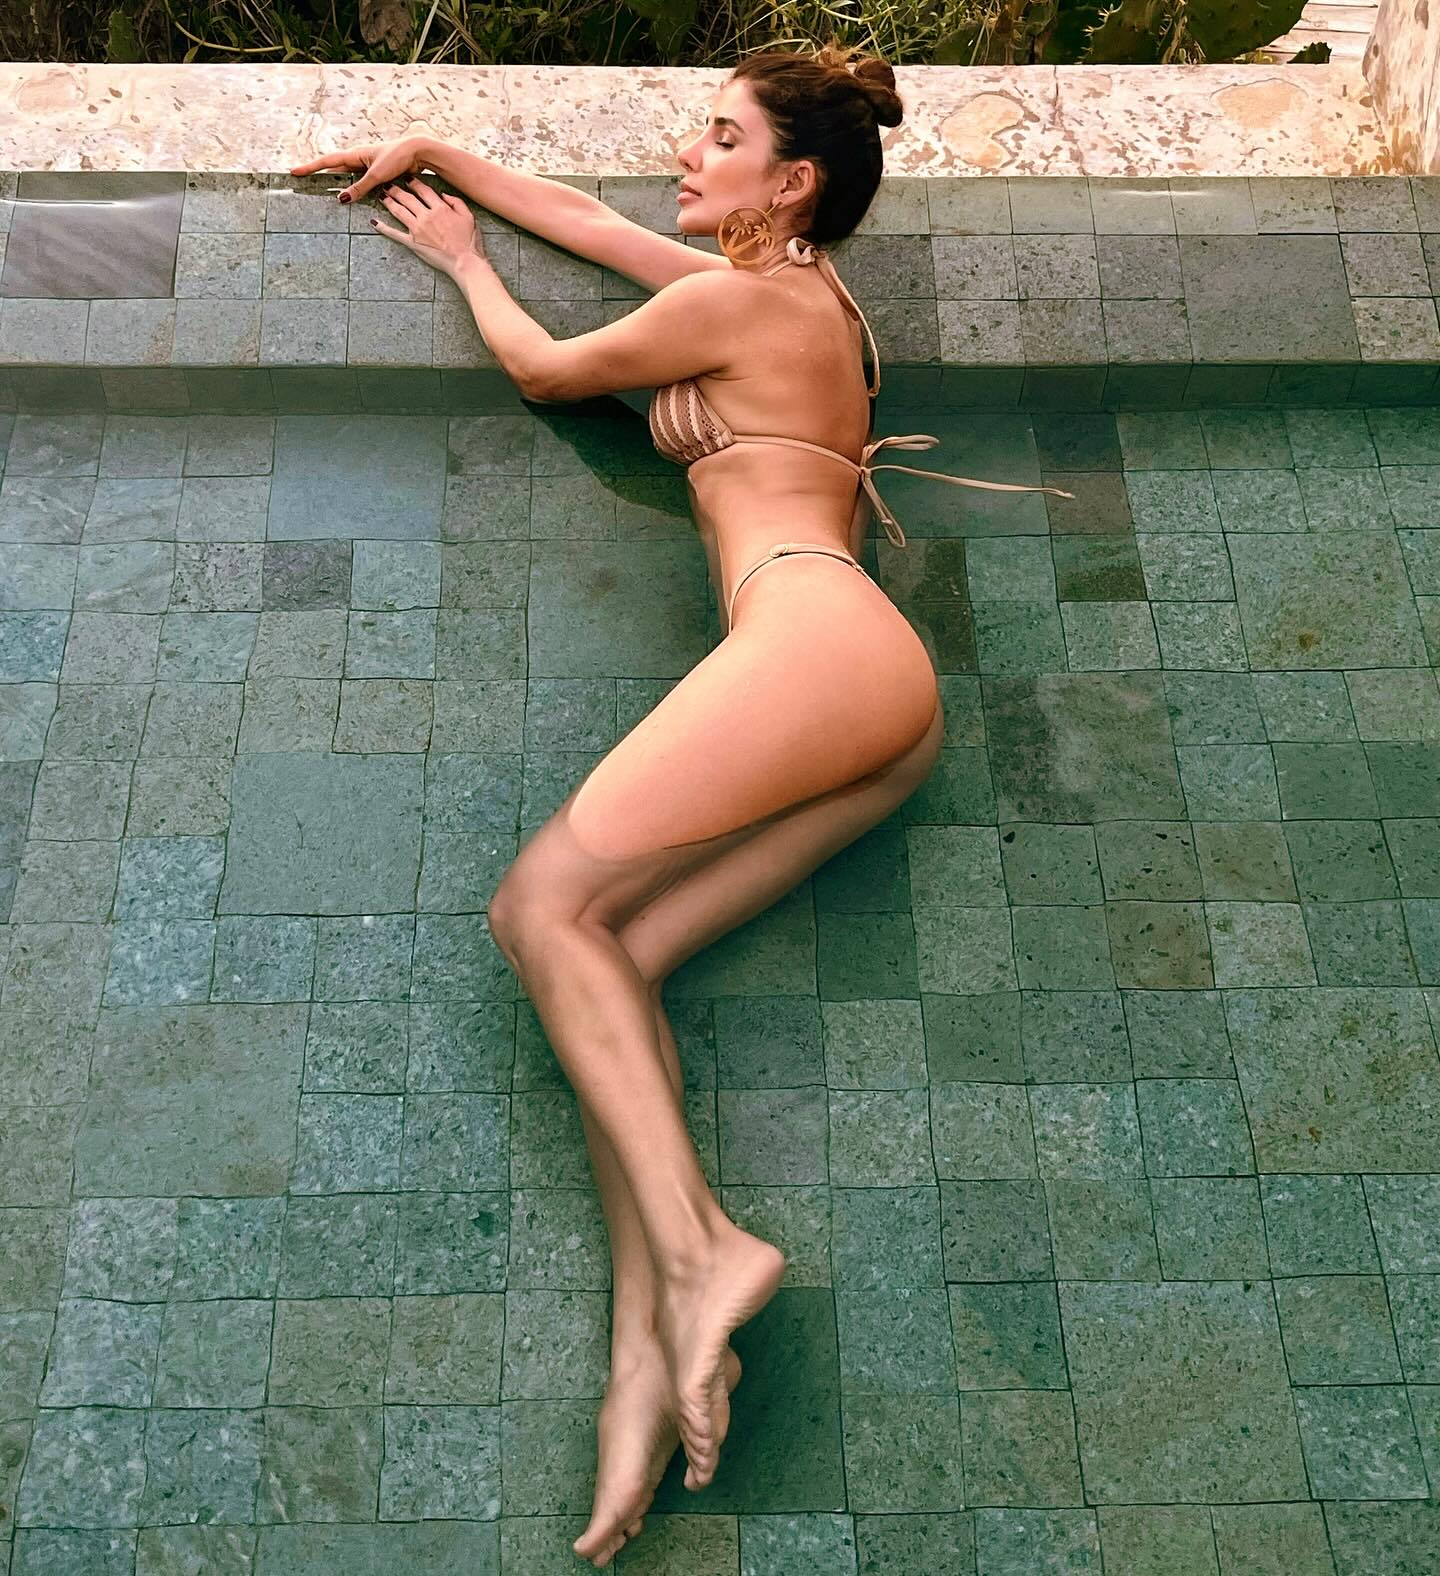 Paula Fernandes exibiu as curvas de biquíni ao falar sobre o sucesso - Foto: Reprodução/ Instagram@paulafernandes